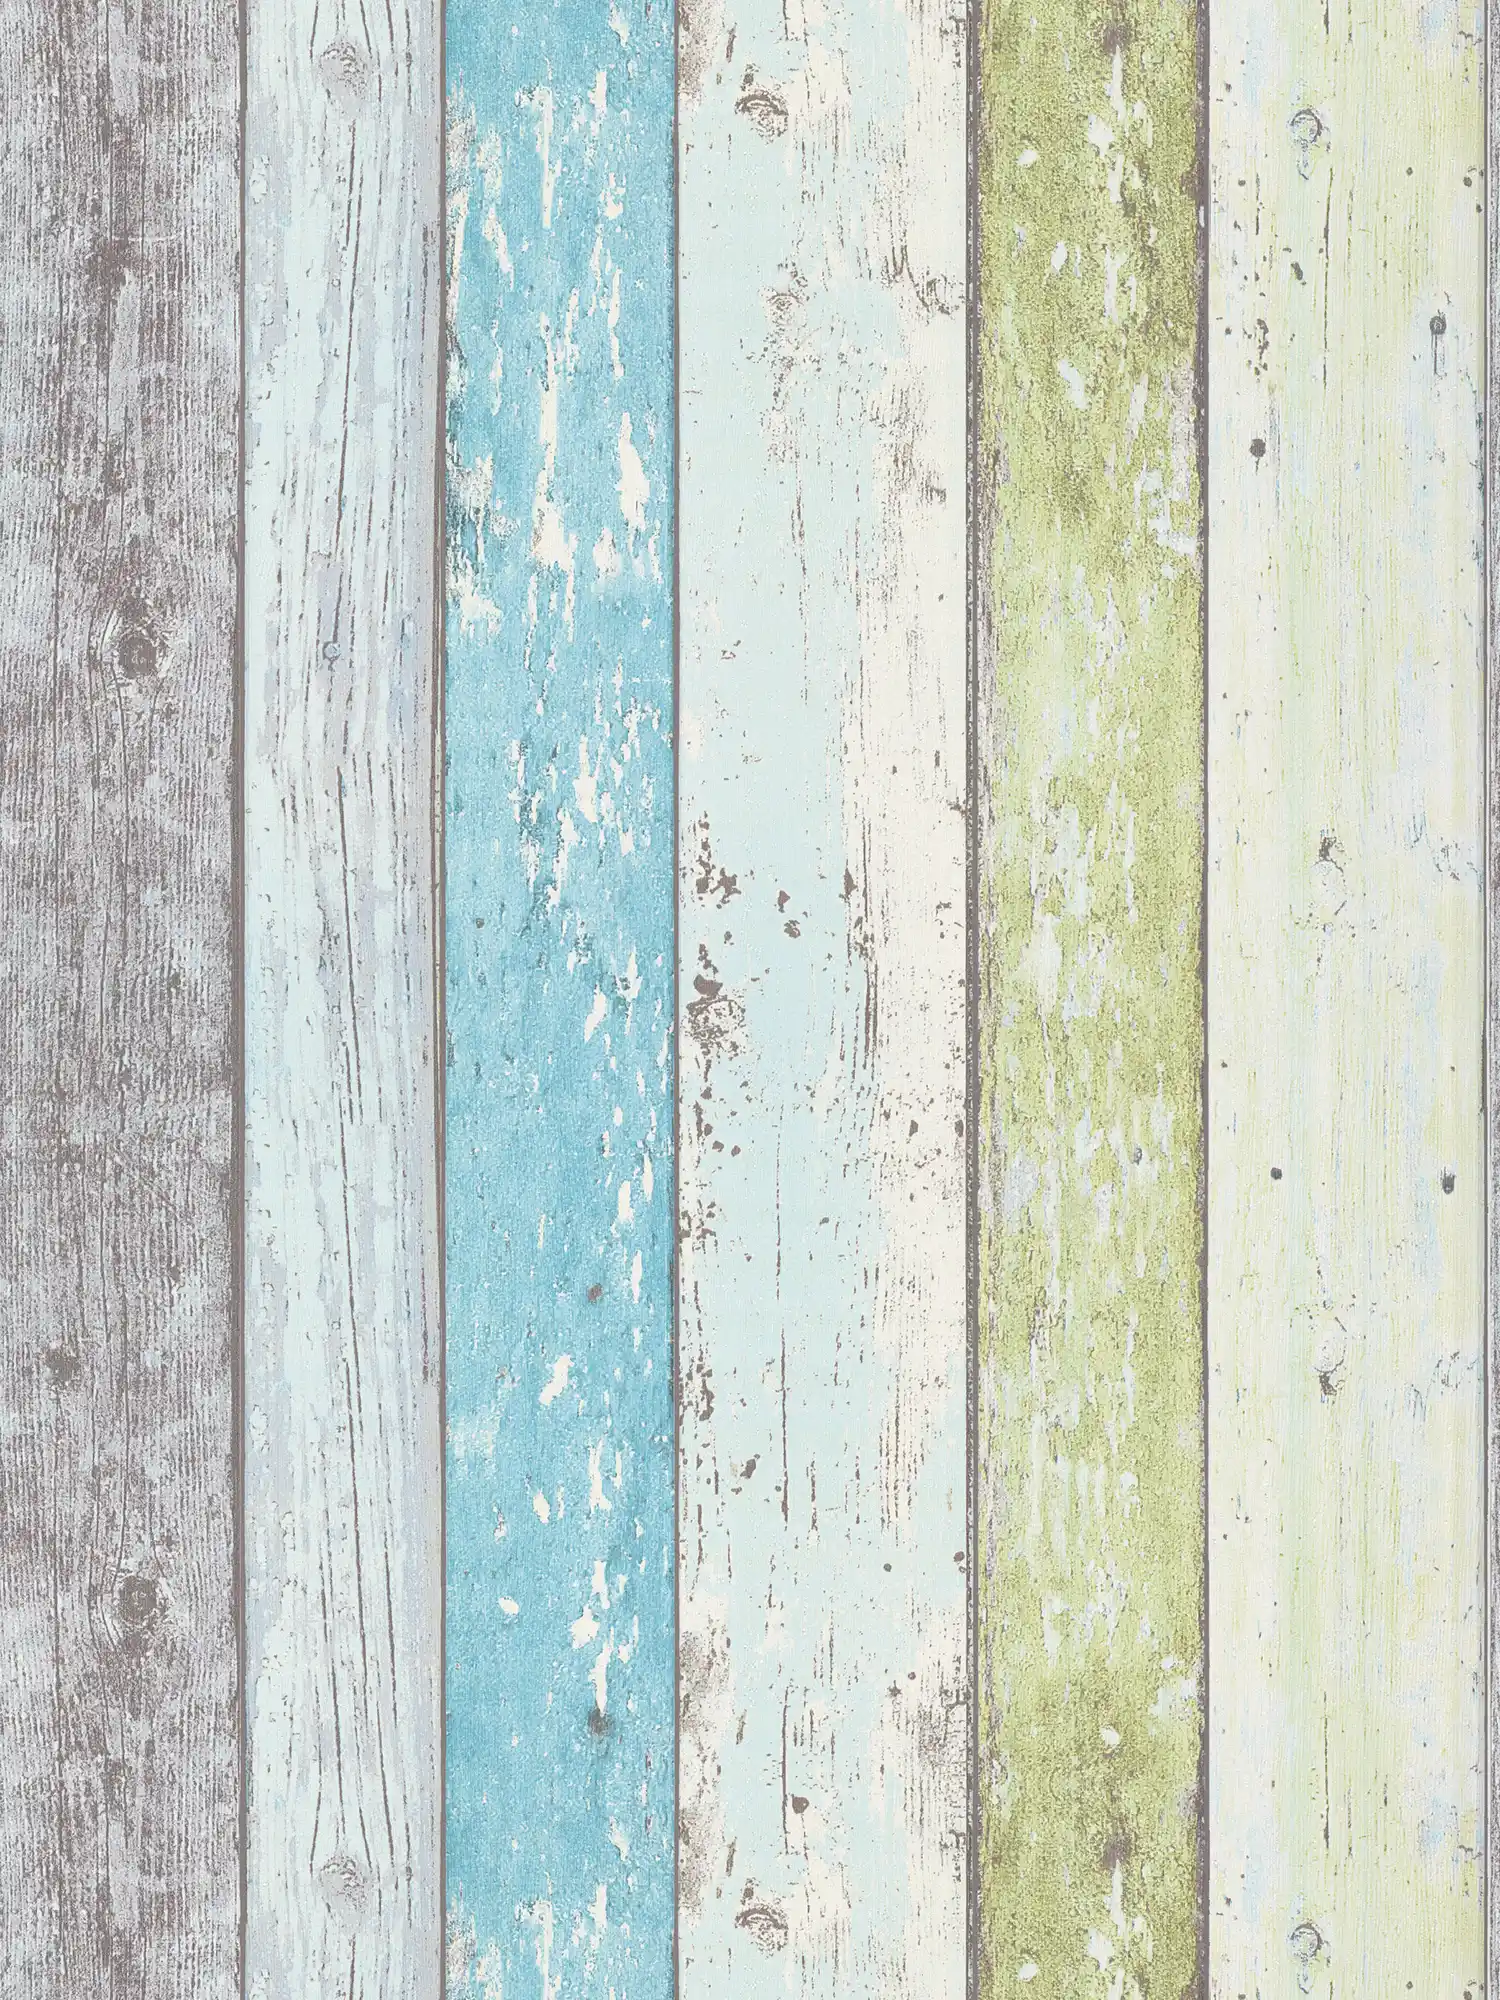 Holz-Tapete mit Used Optik für Vintage & Landhausstil – Blau, Grün, Weiß
